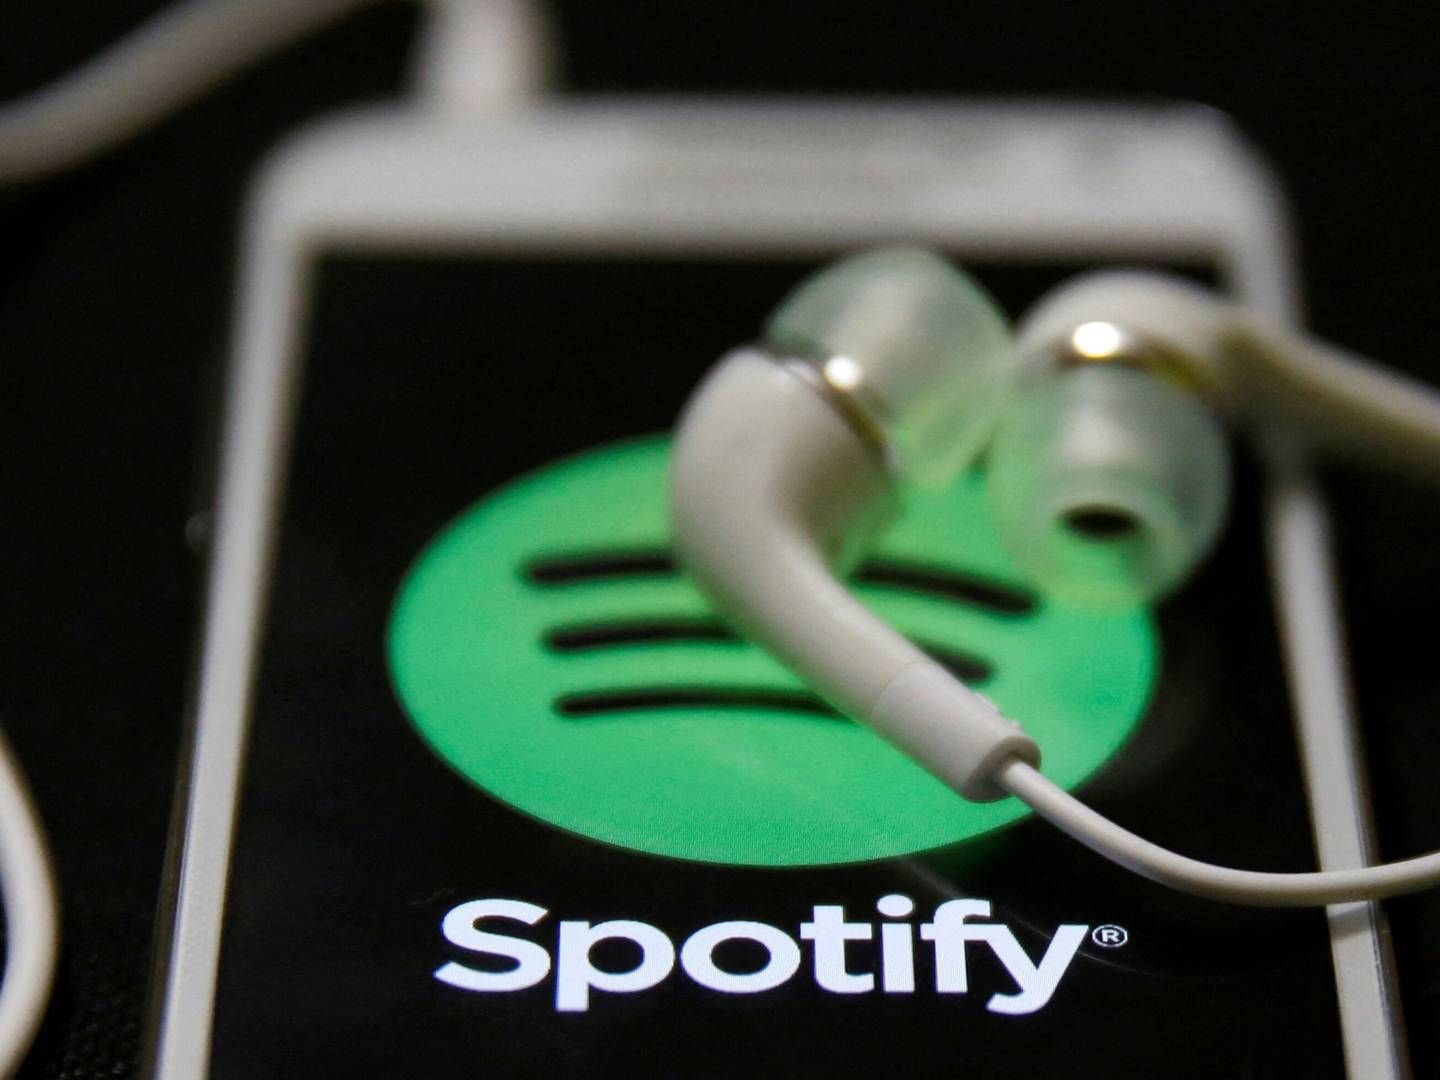 Spotify begyndte som en musiktjeneste, men har siden investeret stort i at få en position på podcastmarkedet og senest også i lydbøger i visse markeder. | Foto: Dado Ruvic/Reuters/Ritzau Scanpix